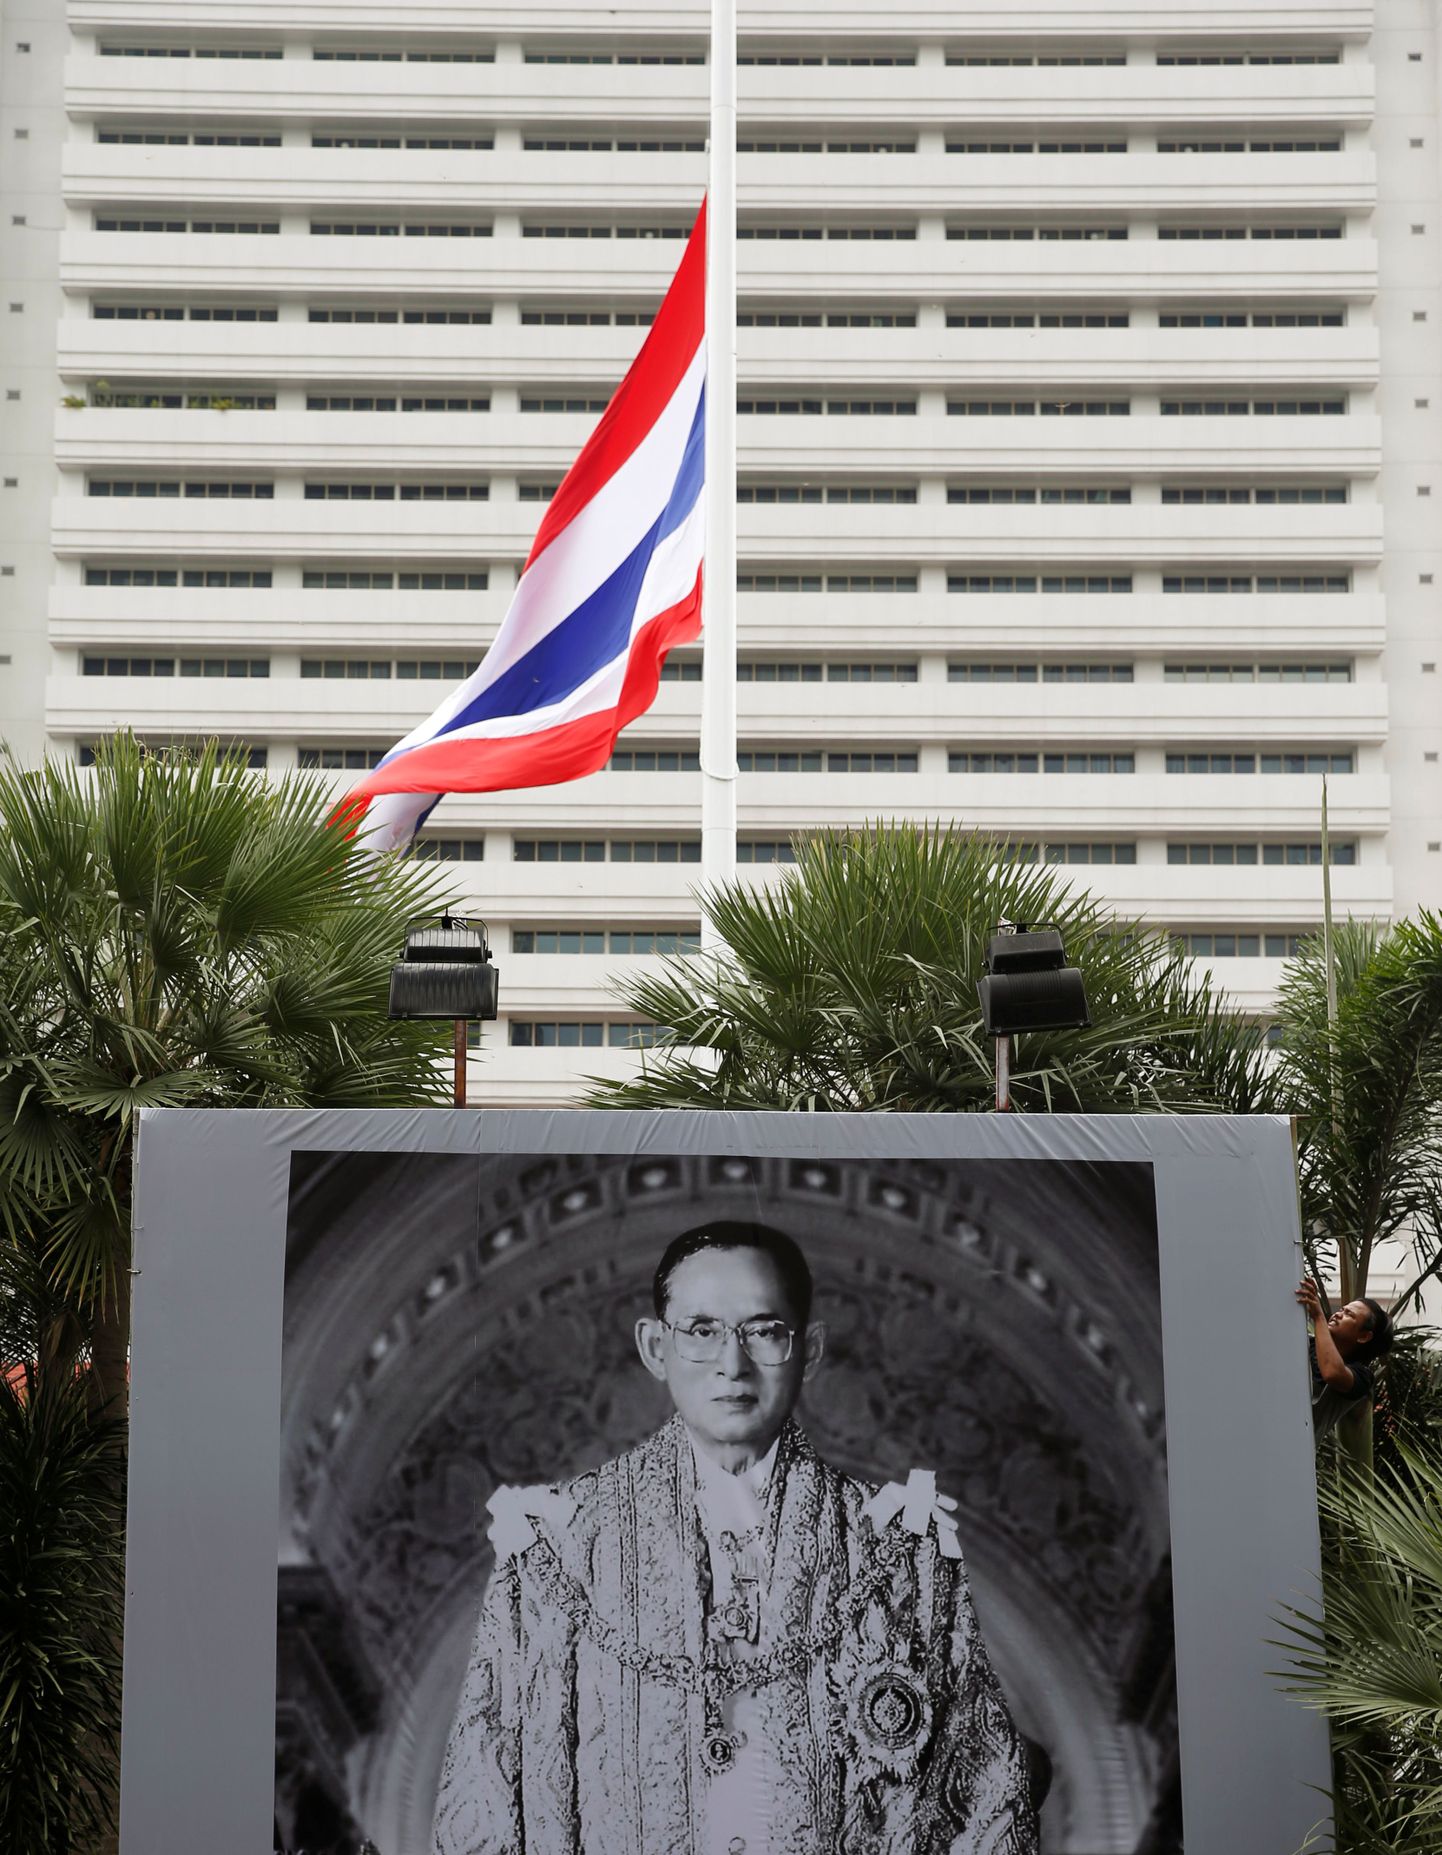 Tai lahkunud kuningaa Bhumibol Adulyadeji portree ja riigilipp politsei peakorteri ees.